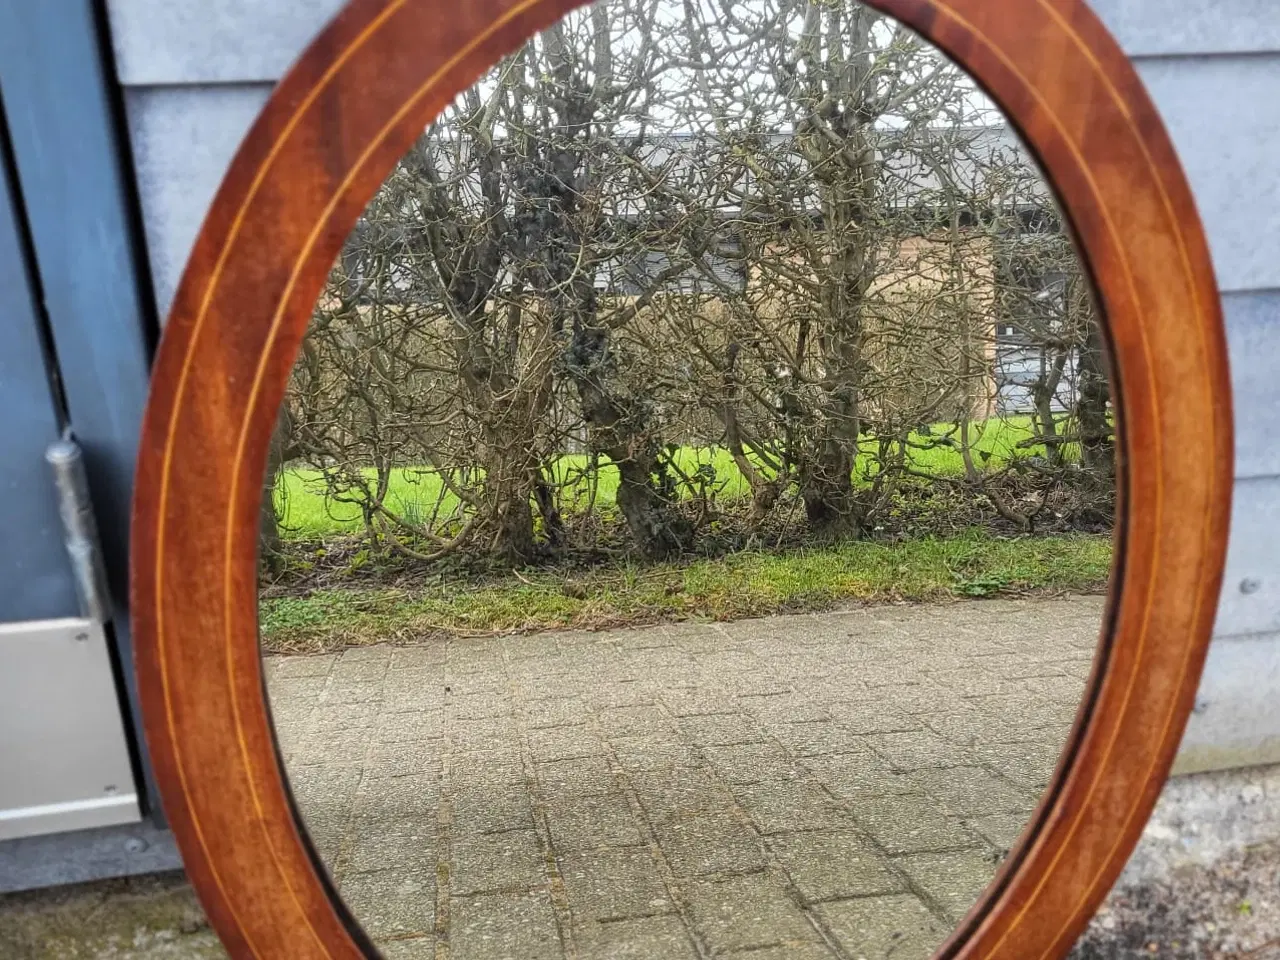 Billede 1 - Ovalt spejl